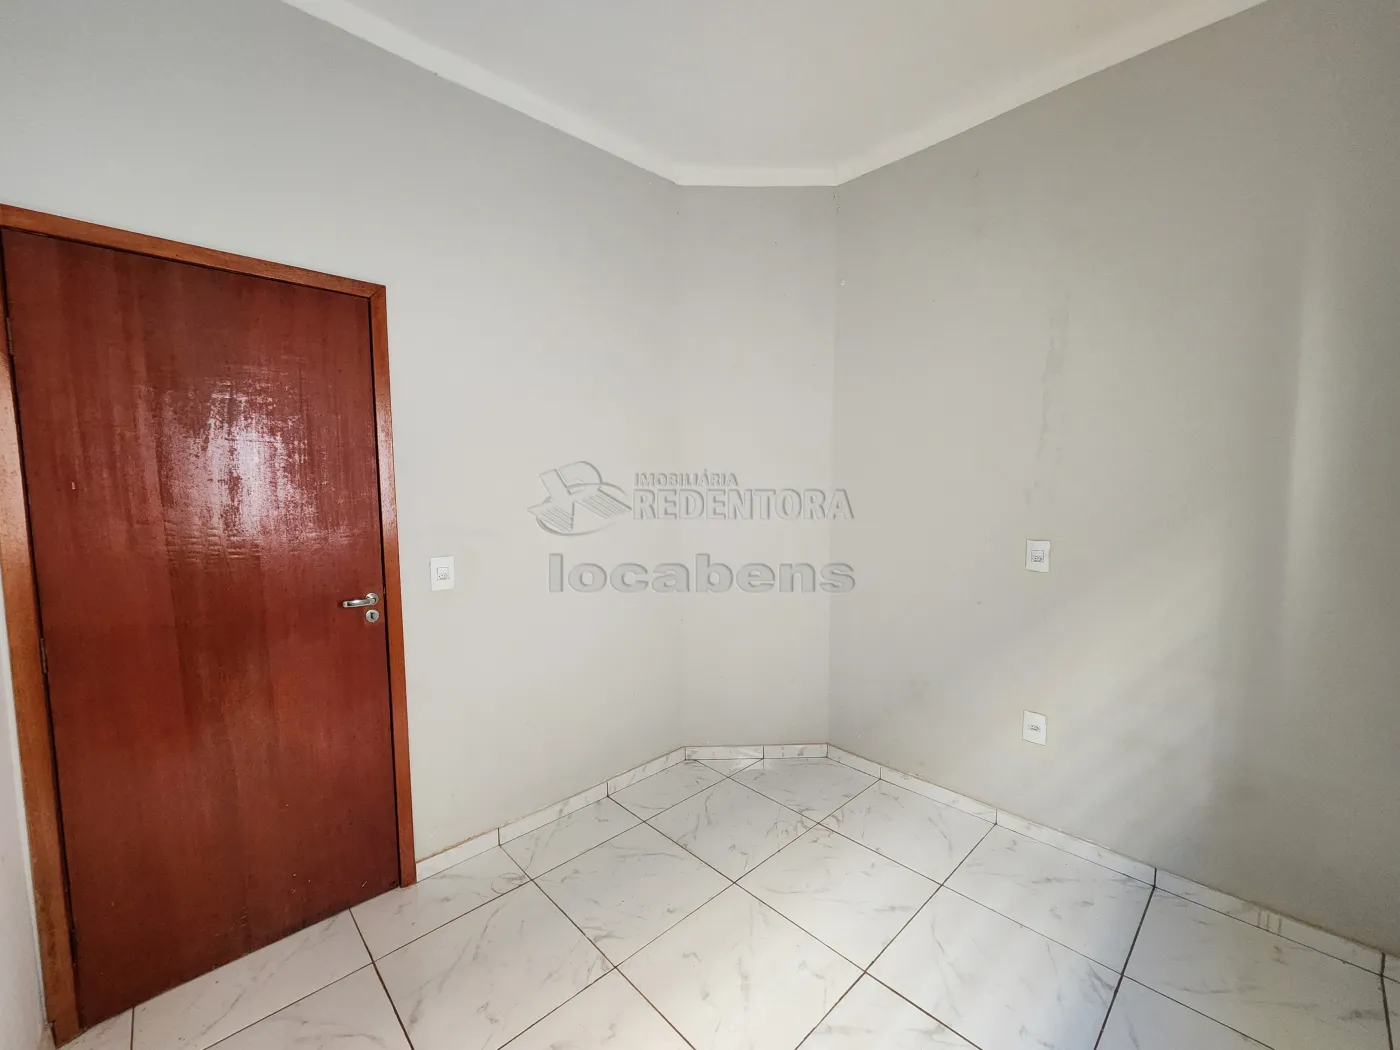 Alugar Casa / Padrão em São José do Rio Preto R$ 980,00 - Foto 11